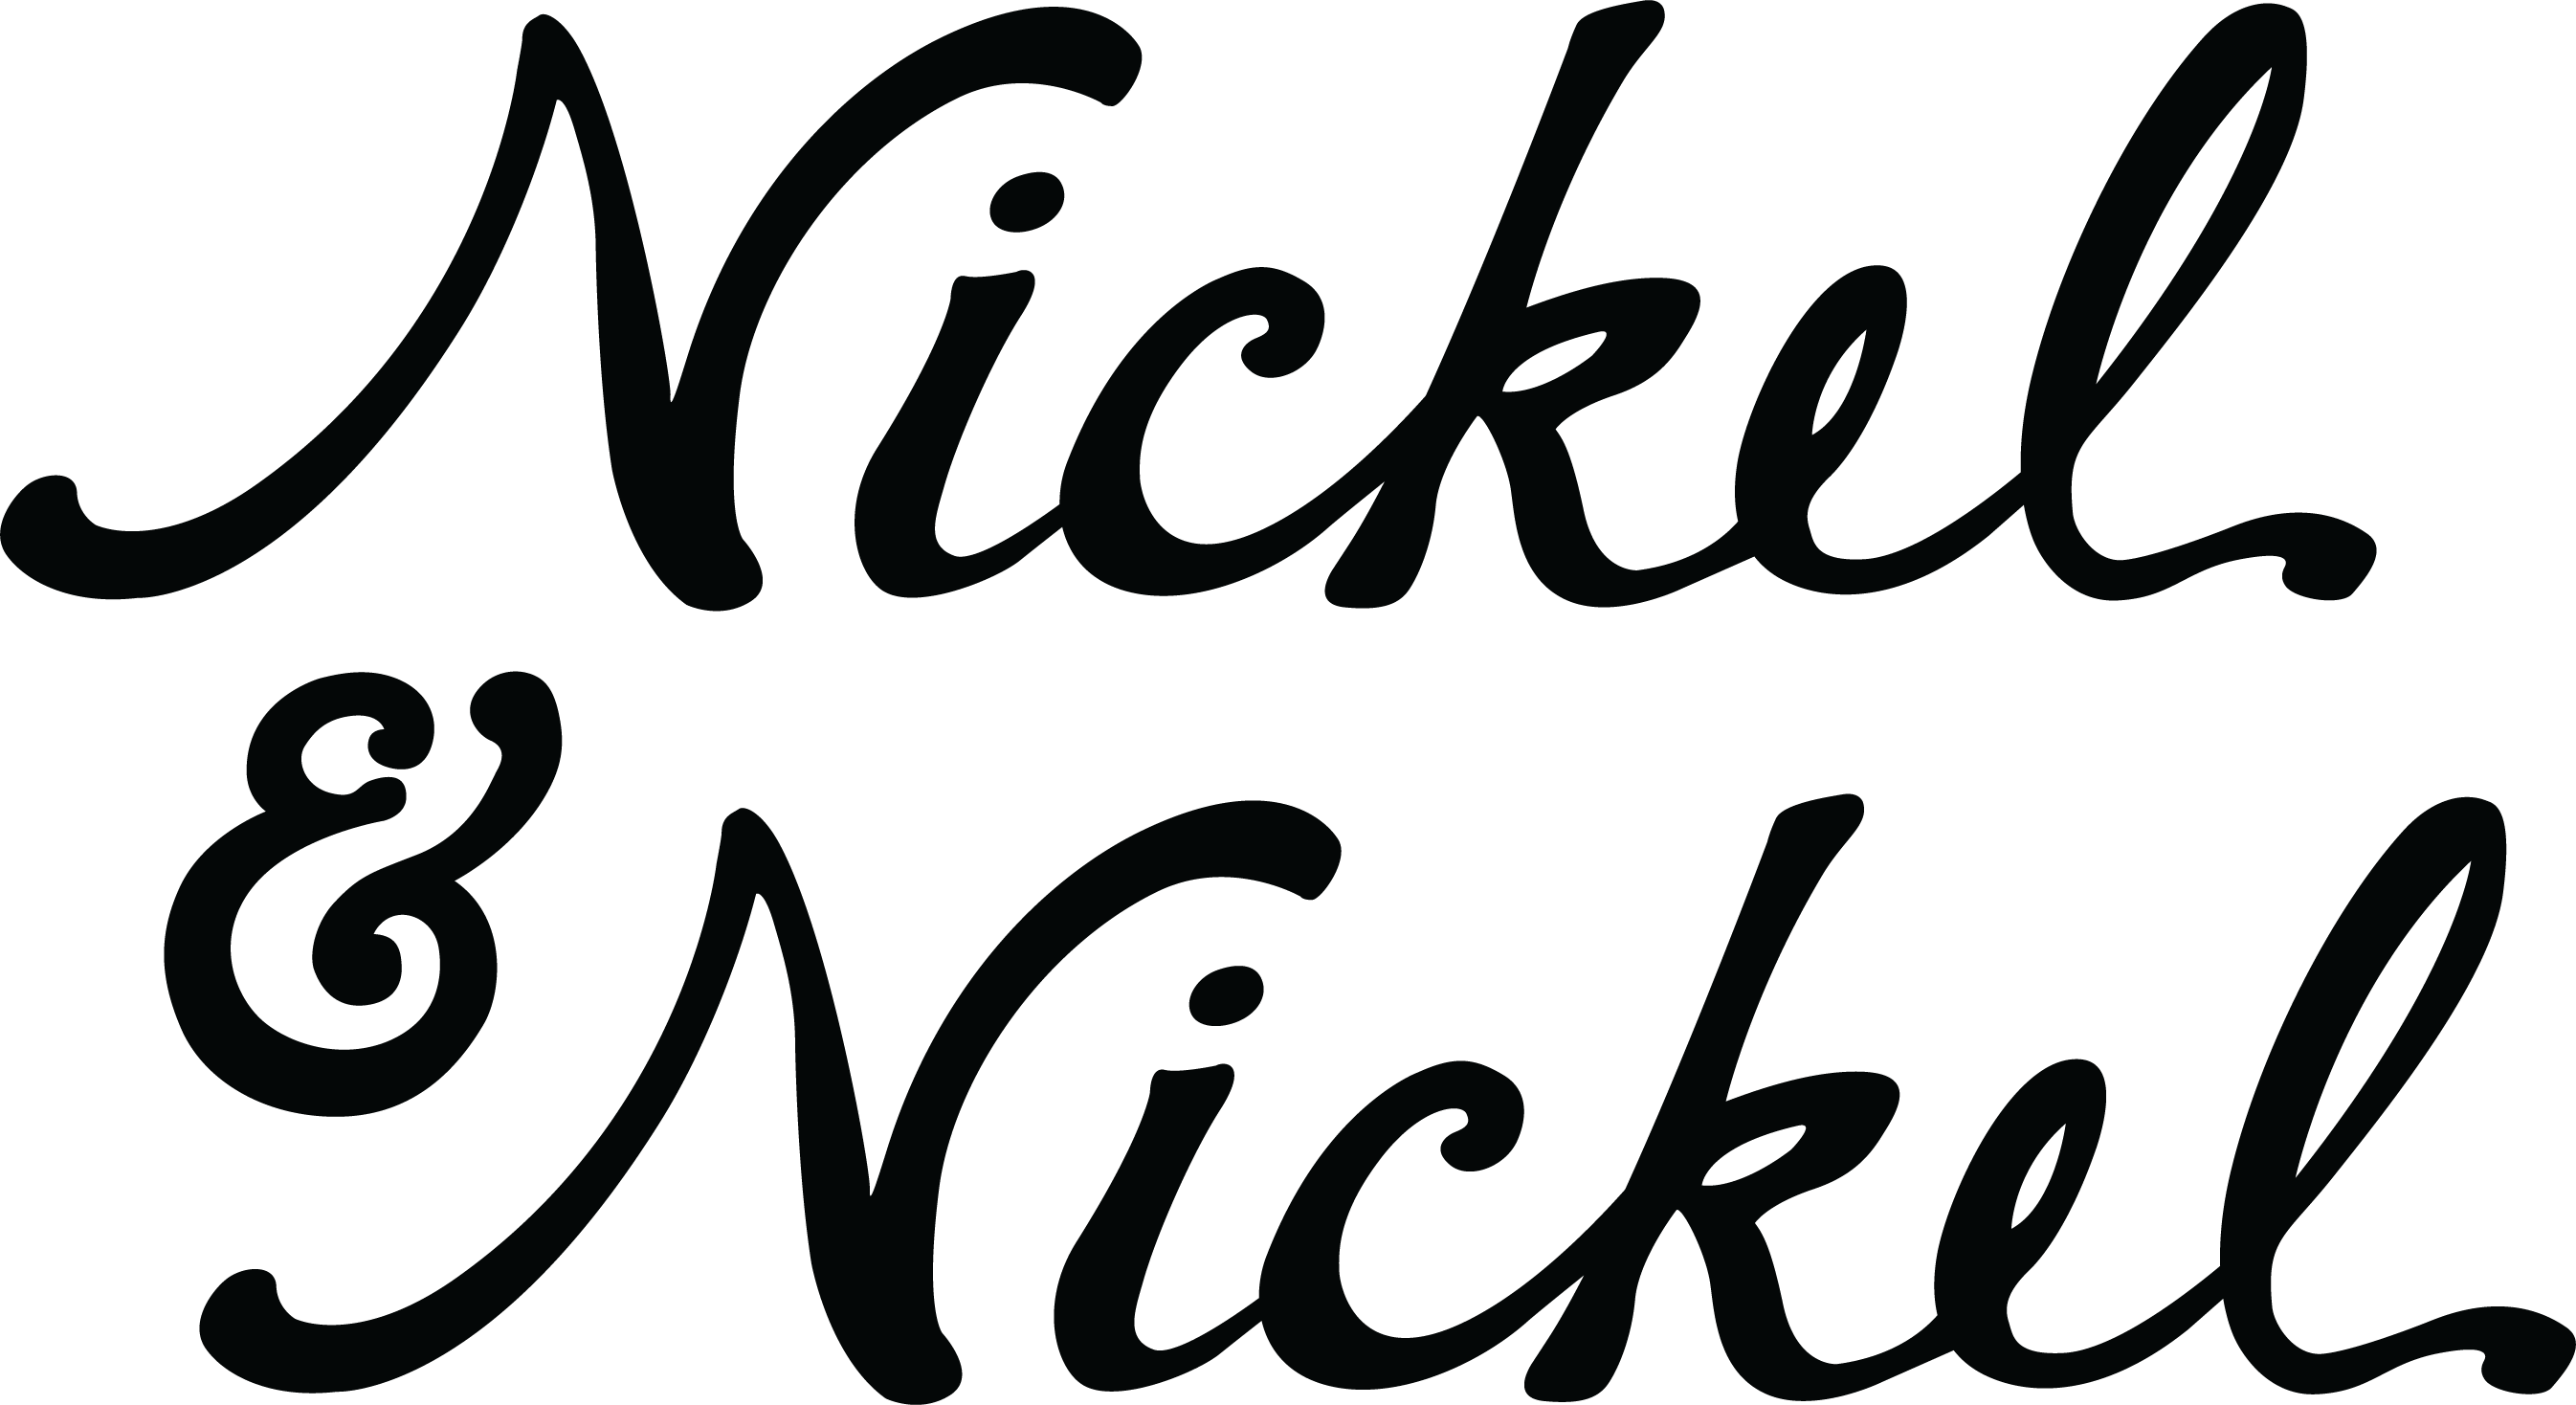 Nickel & Nickel logo